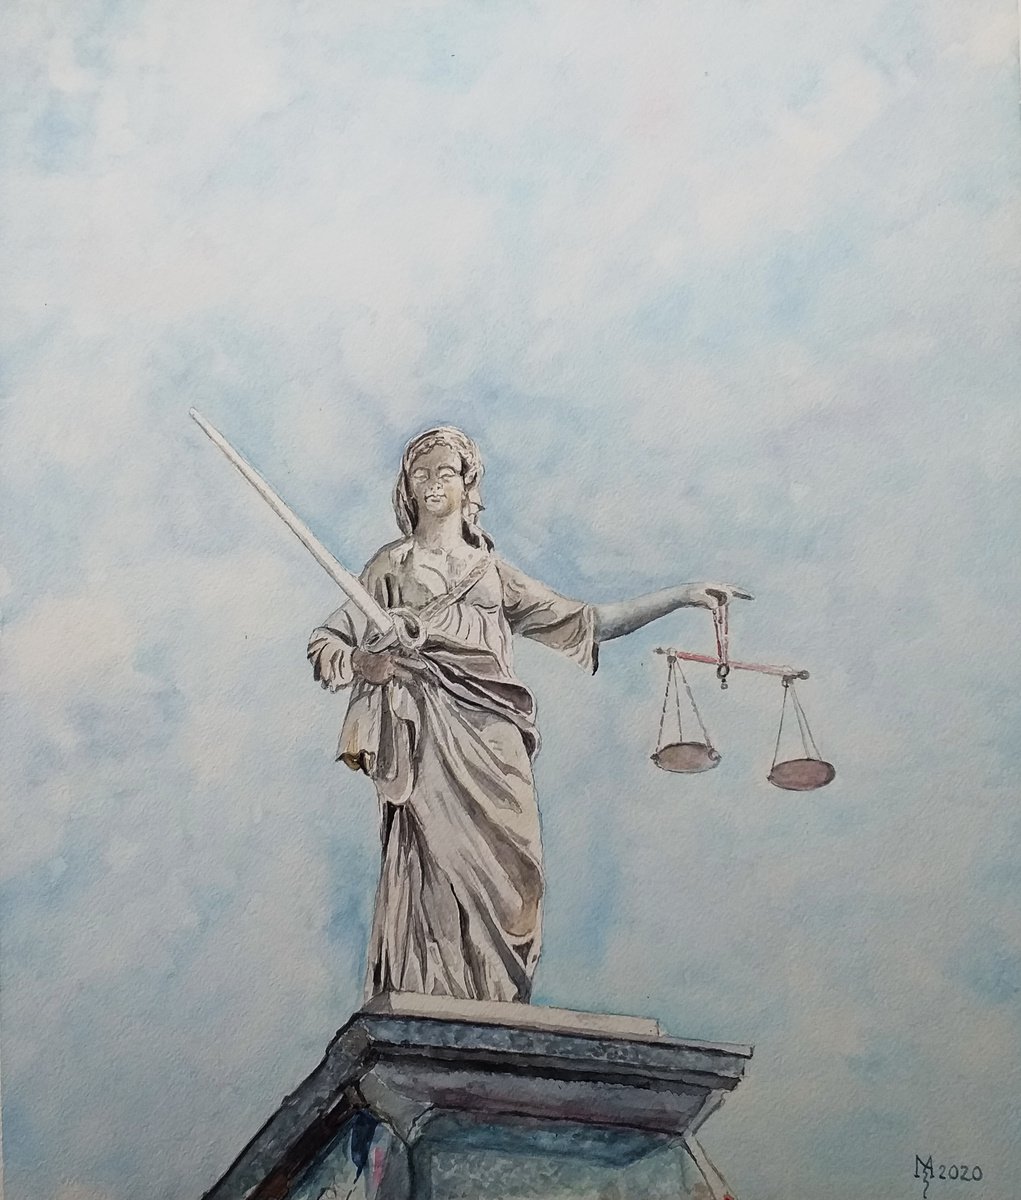 JUSTICIJA GODDESS OF JUSTICE 37.5 x 44 cm by Zoran Mihajlovi? Muza